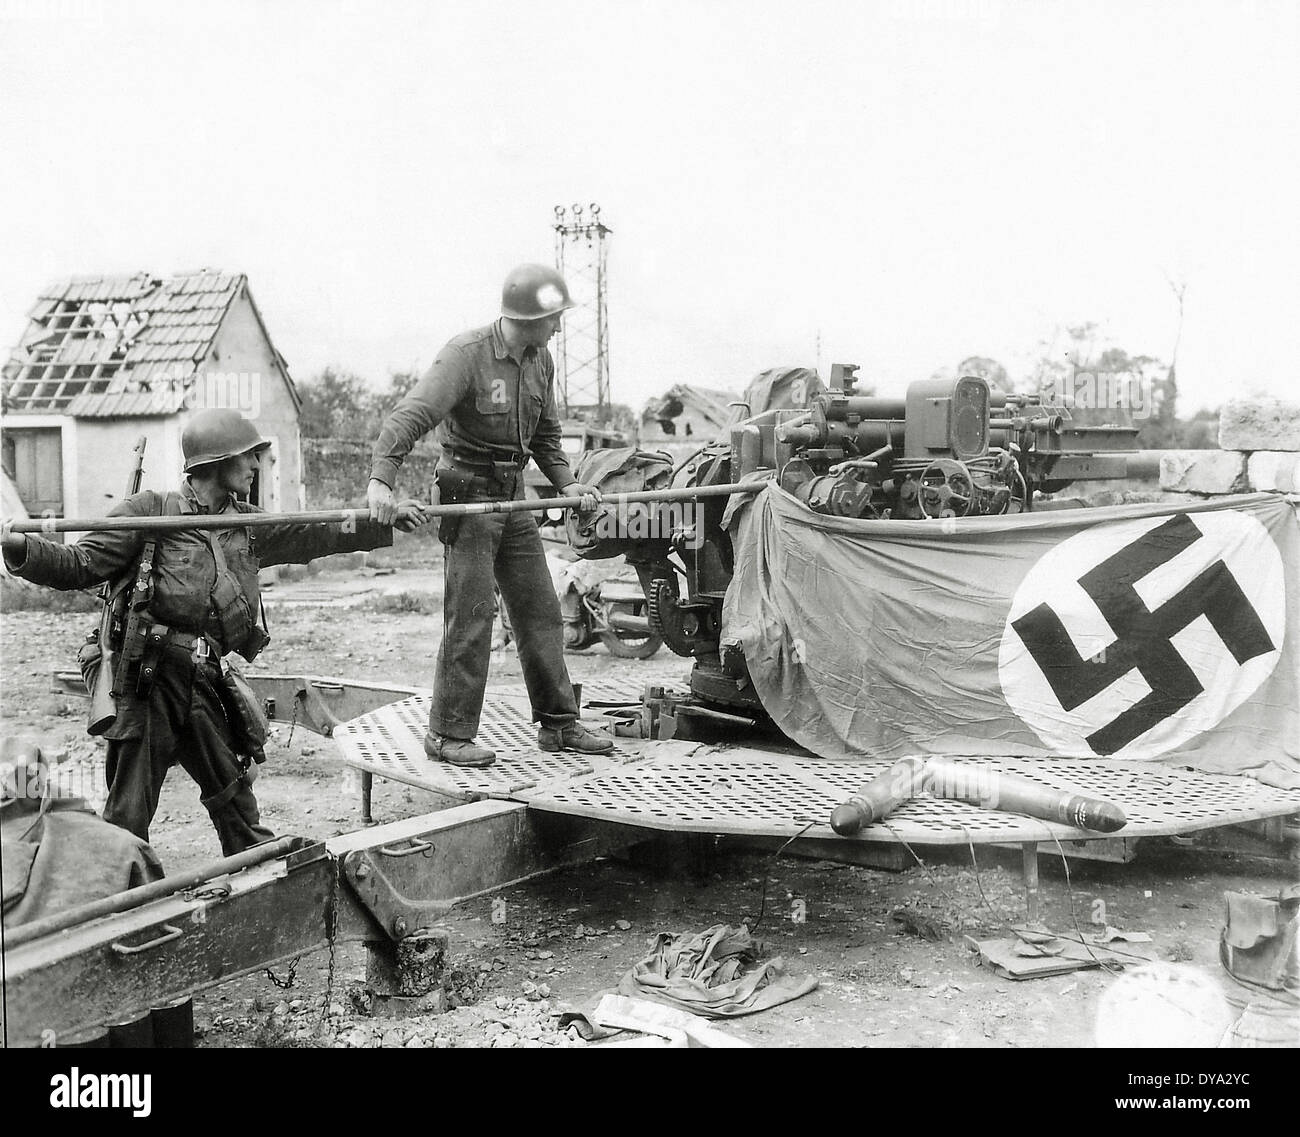 Historique de la Deuxième Guerre mondiale Seconde Guerre mondiale Guerre mondiale Seconde Guerre mondiale l'opération Overlord Overlord Nazi Invasion emblèmes nationaux-socialistes flag vict Banque D'Images